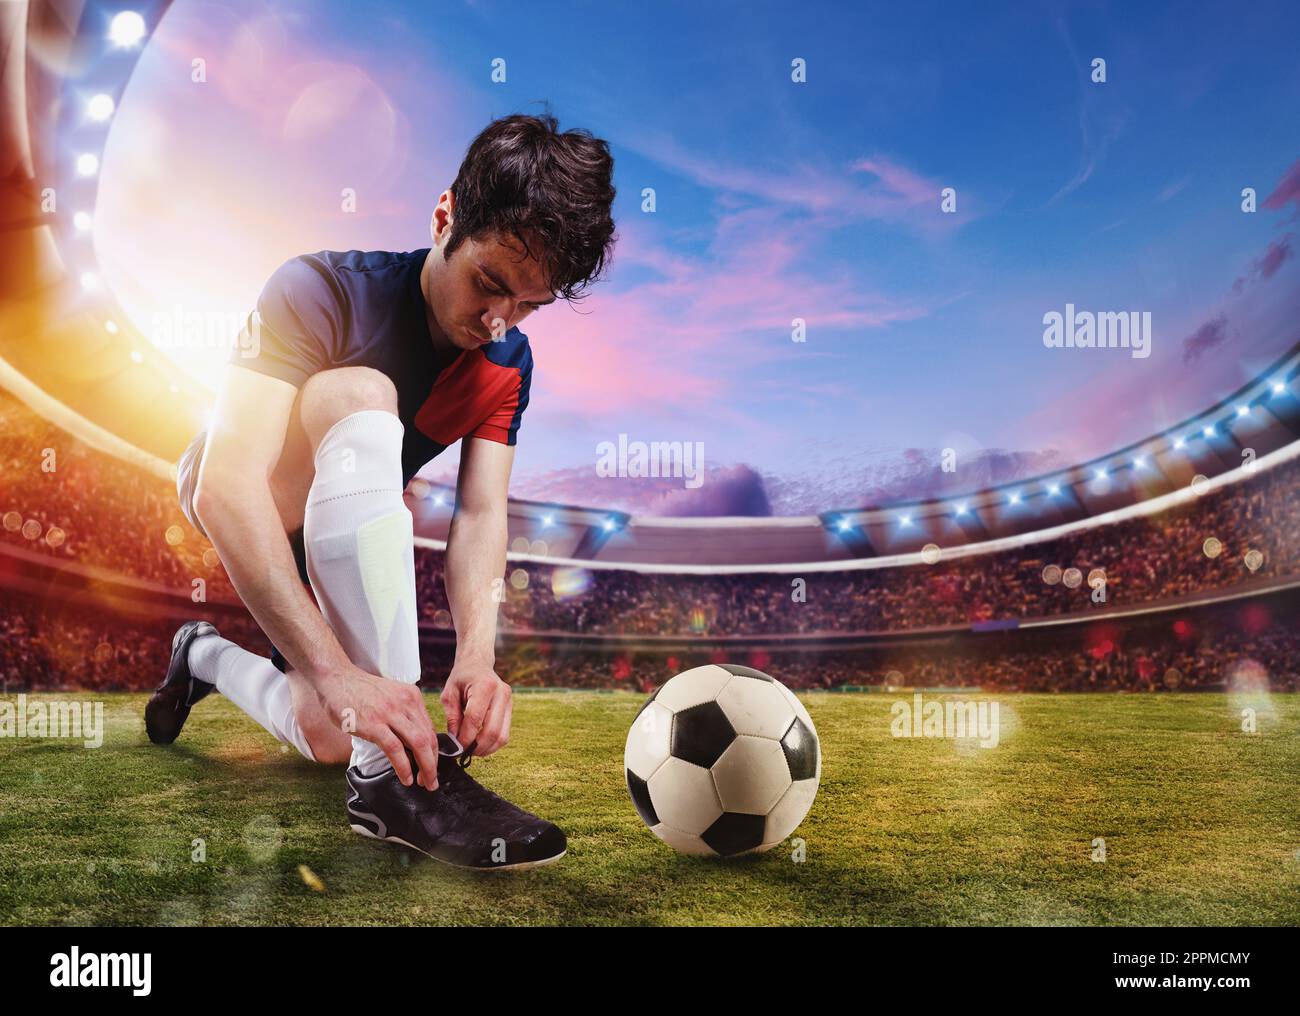 Le joueur de football attache ses chaussures de football prêtes à jouer au stade Banque D'Images